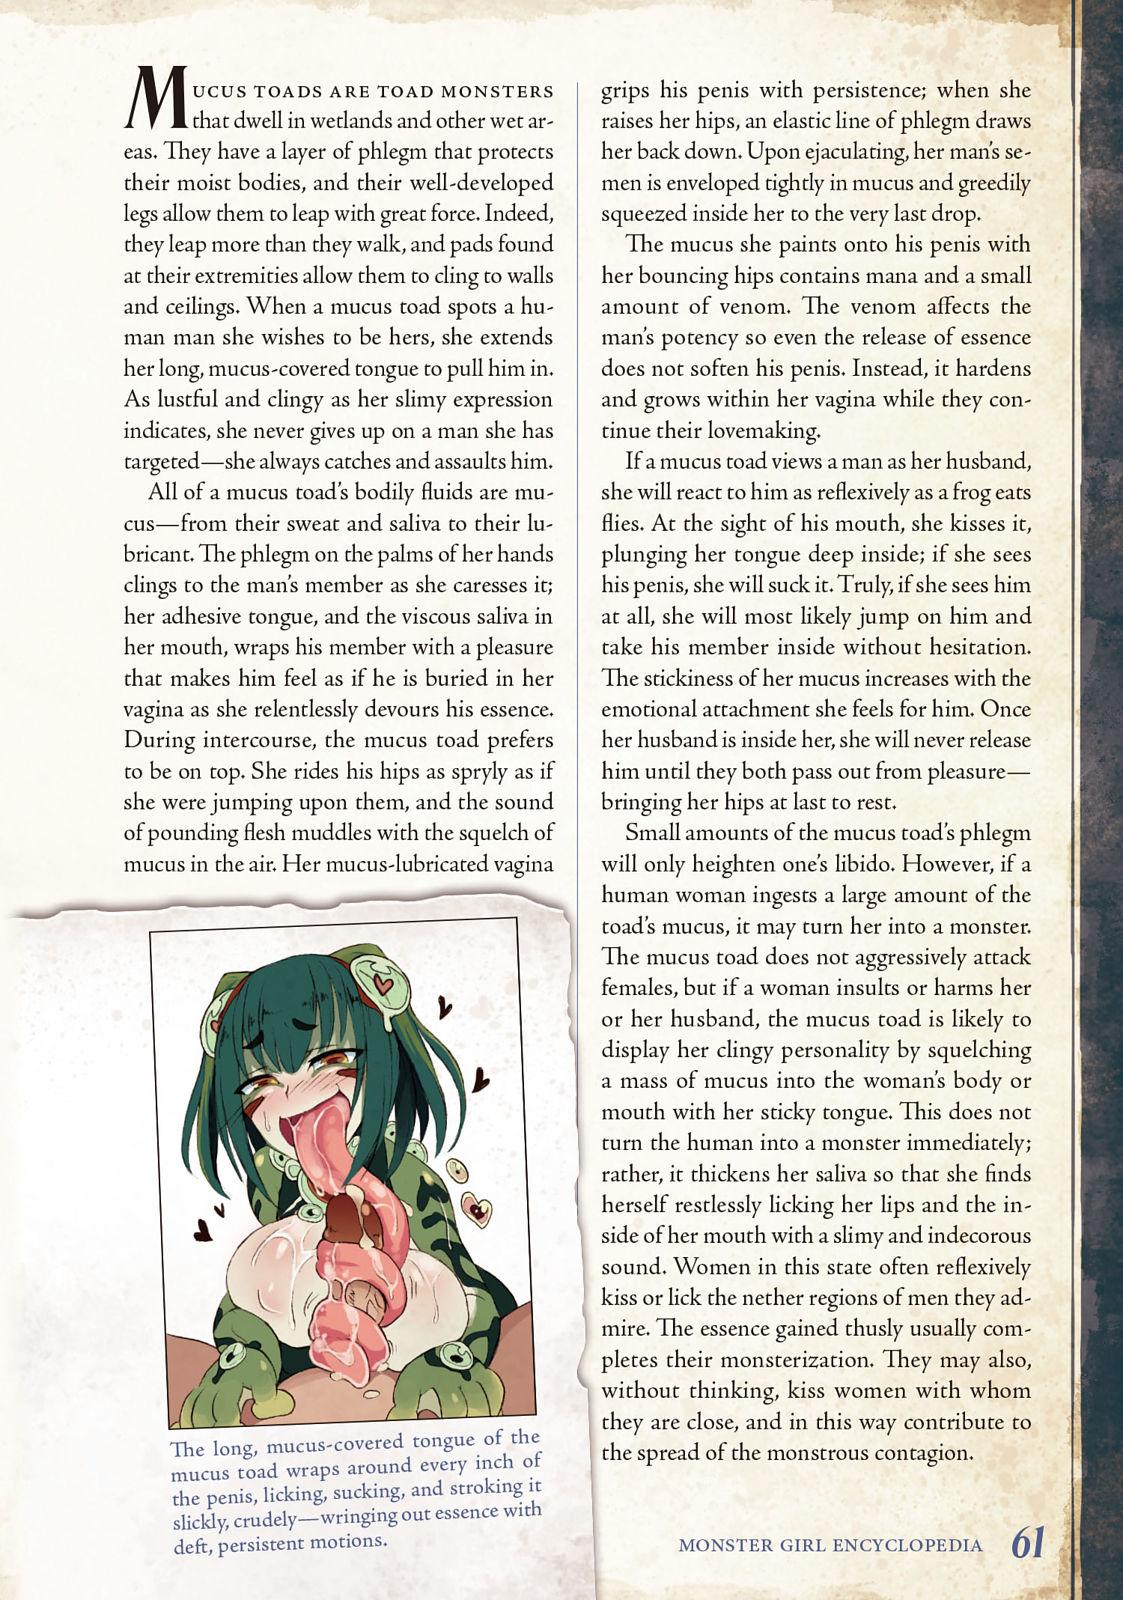 Monster Girl Encyclopedia Vol. 2 61